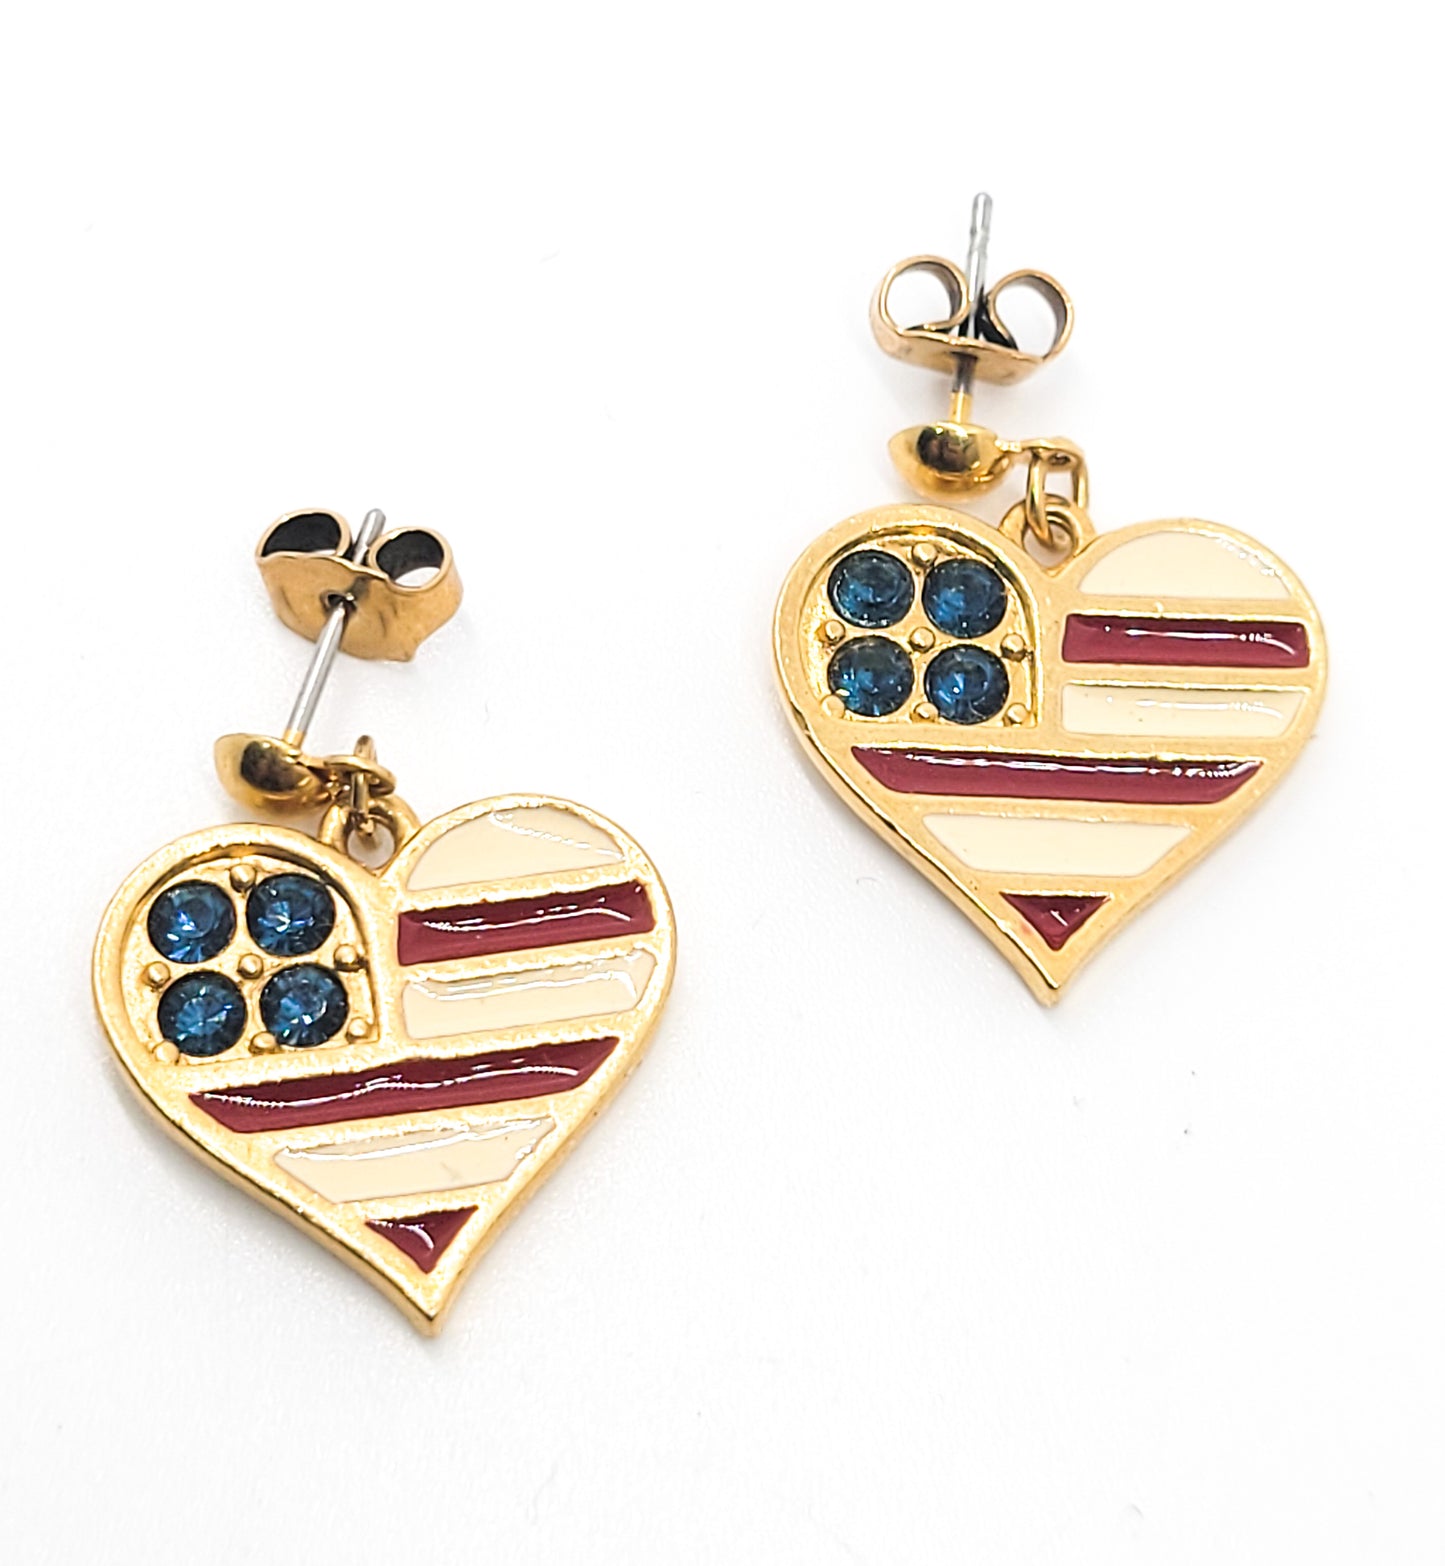 Avon Patriotic American flag rhinestone and enamel heart drop earrings 4th of July